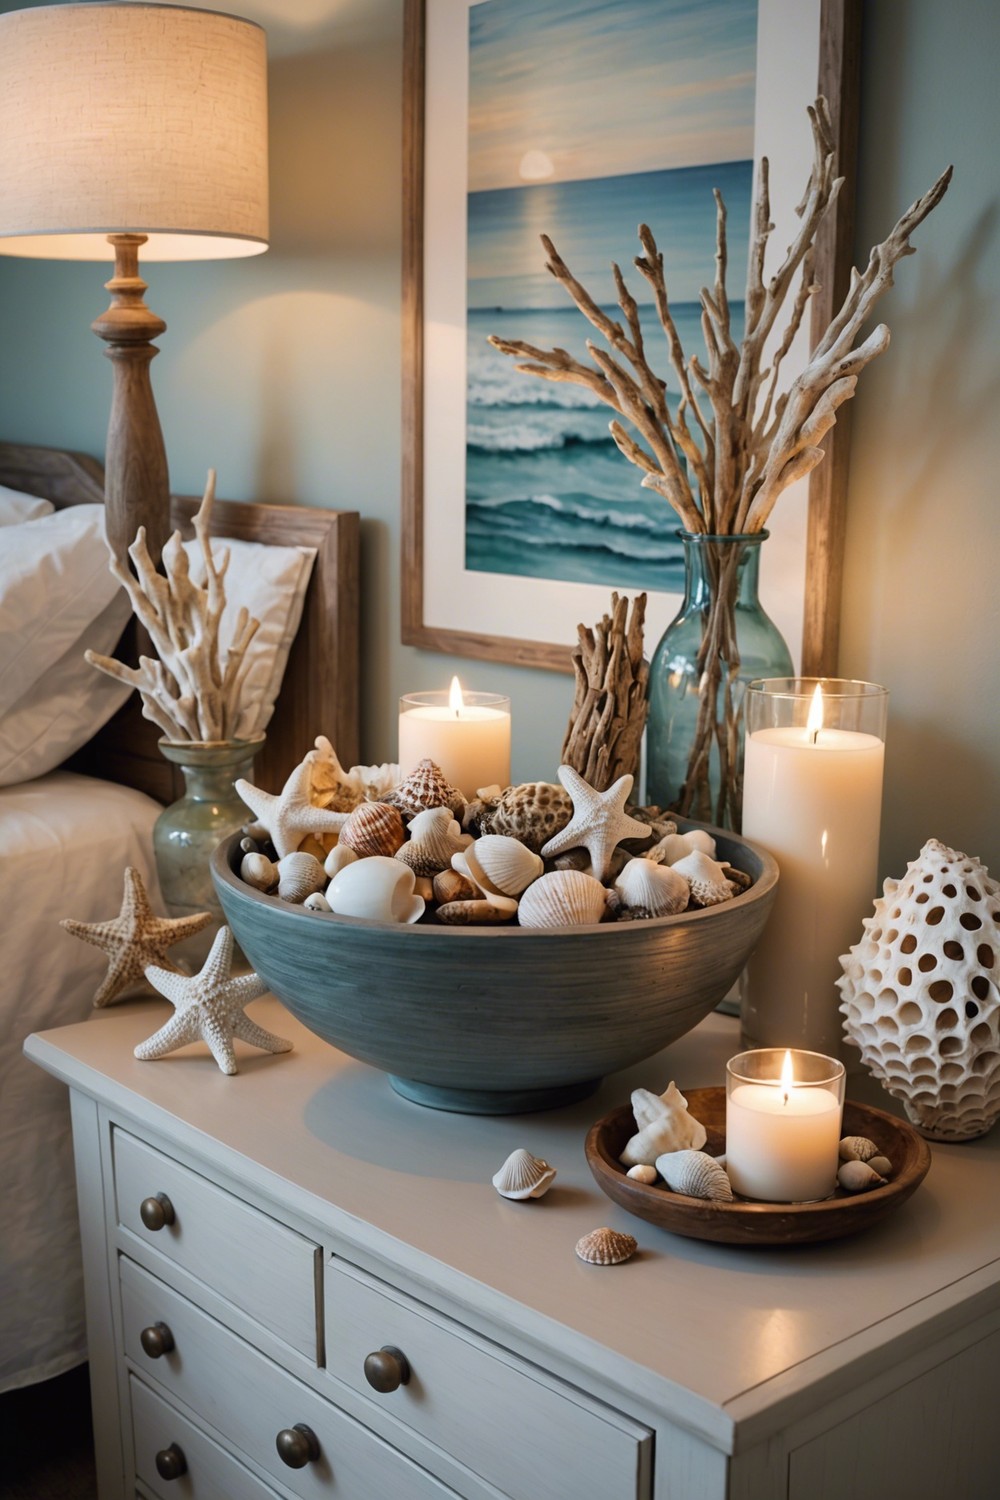 Add a Coastal Touch with Seashells